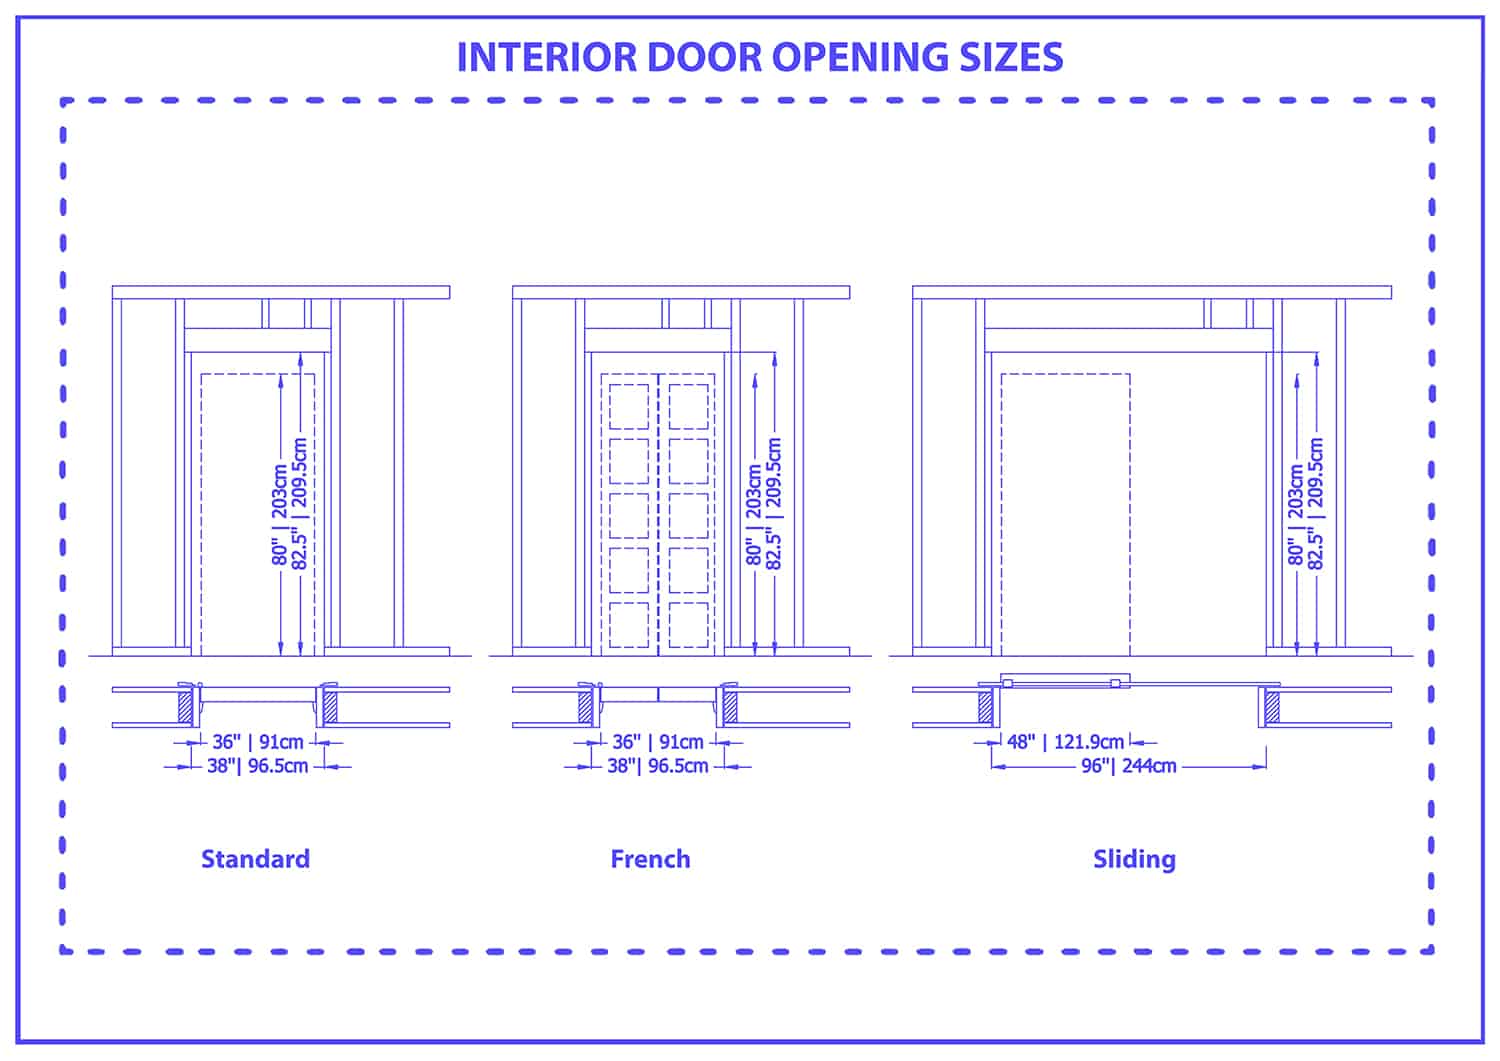 Interior door opening sizes